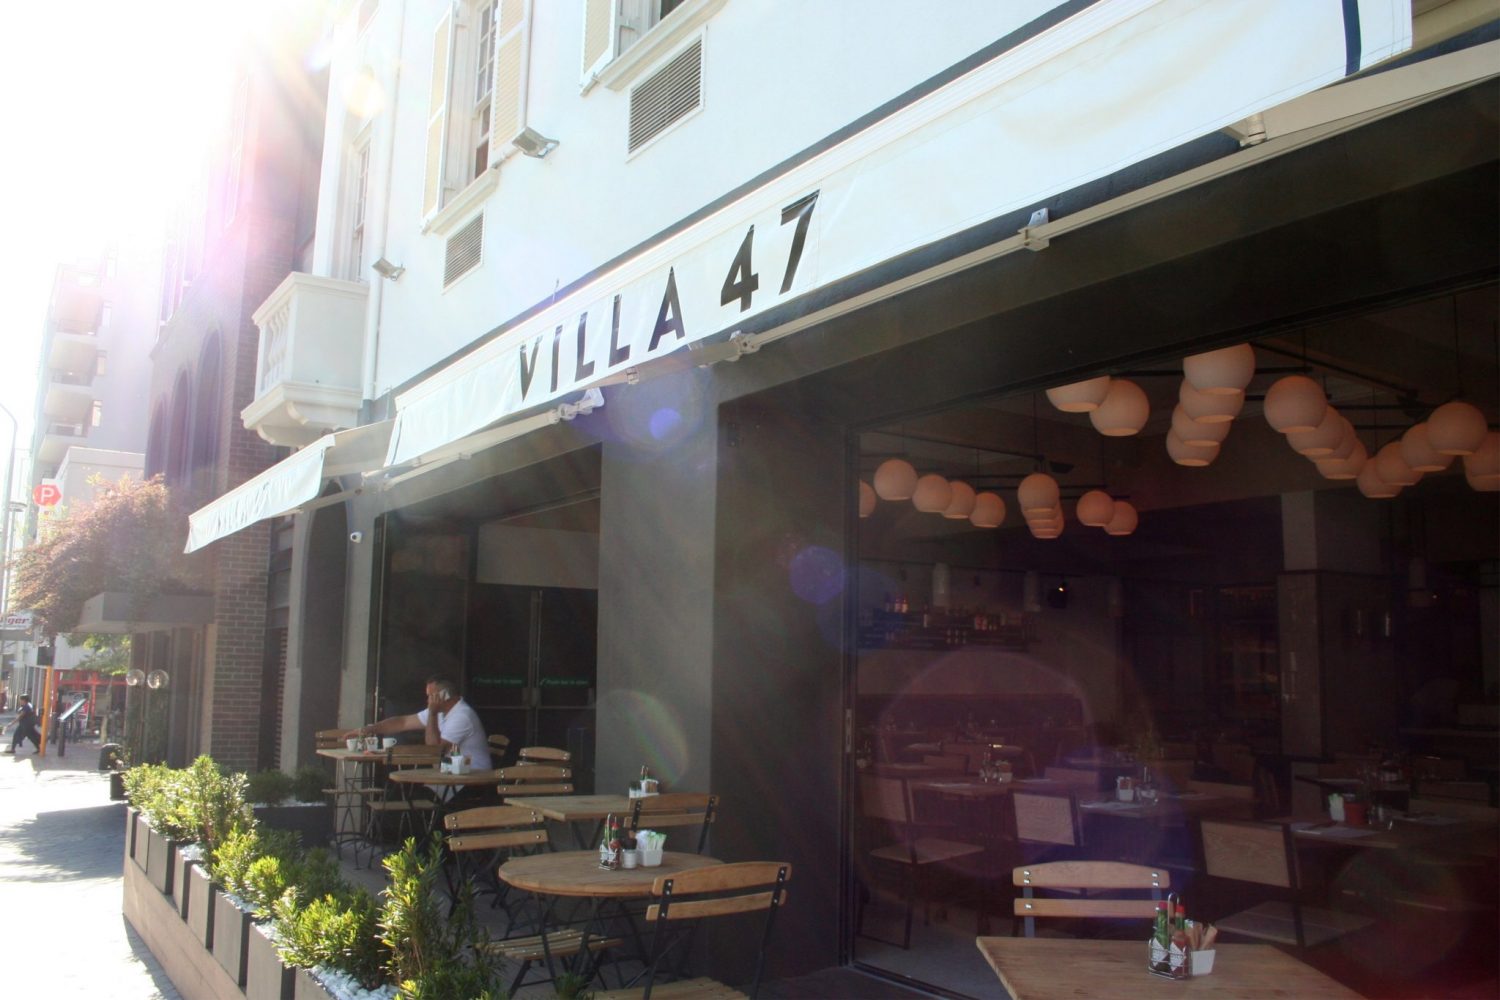 Villa 47 | Locanda Restaurant | Bree Street | REVIEW